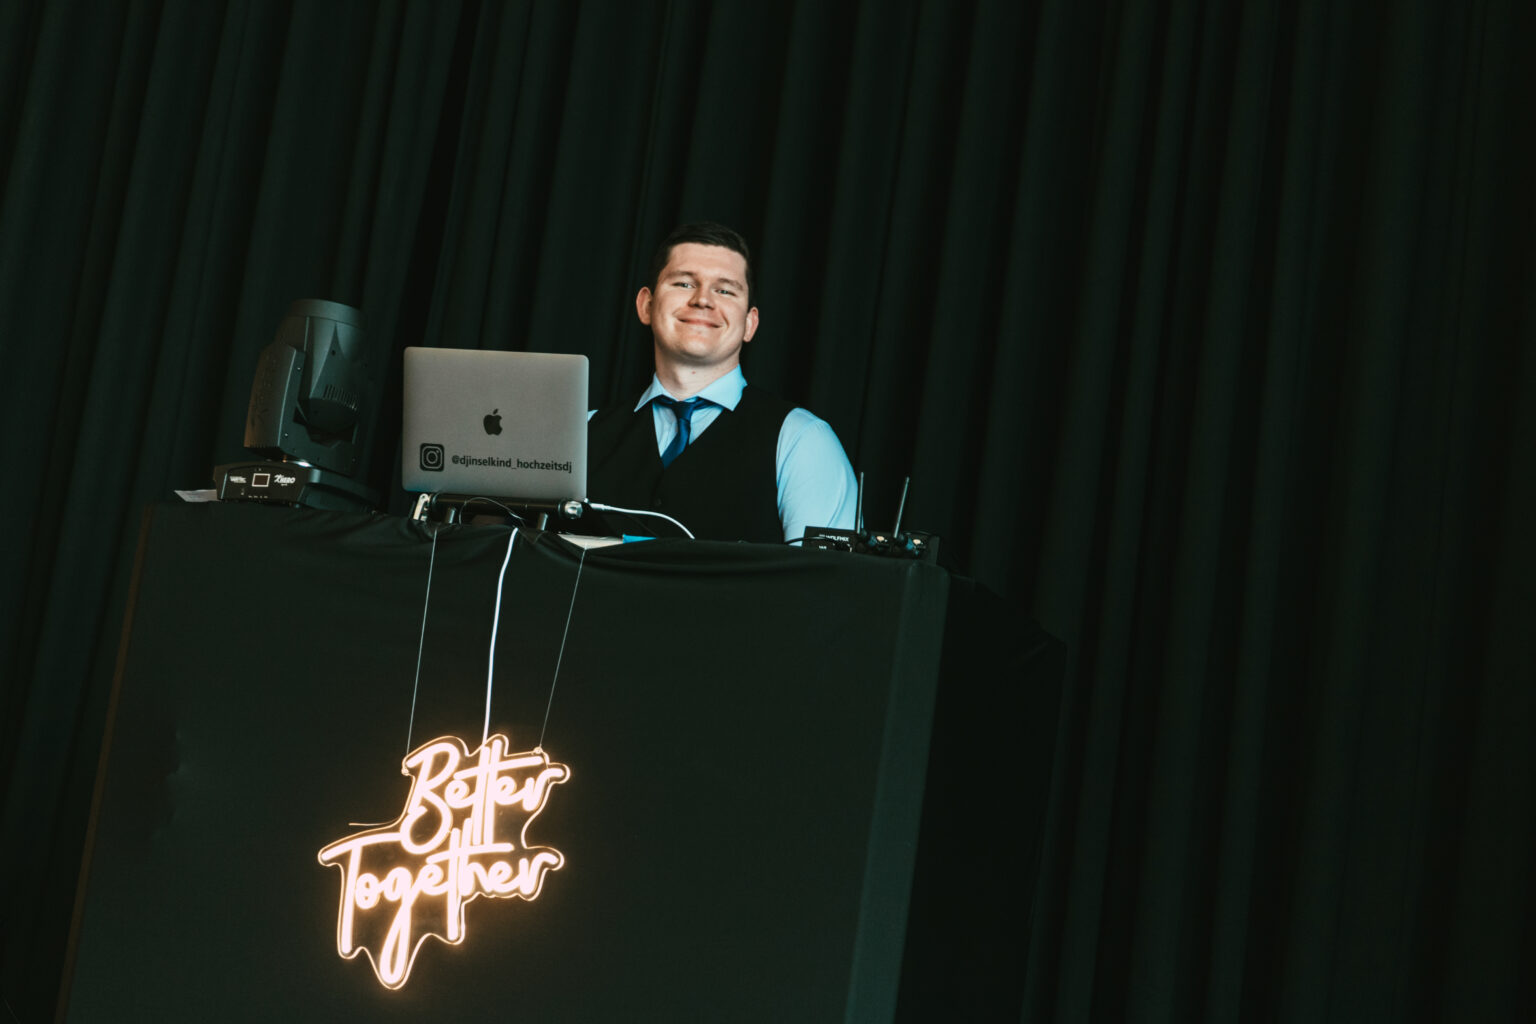 DJ Inselkind Cornell Walter als Hochzeits-DJ mit Fotobox und Veranstaltungstechnik auf Hochzeit in Göttingen